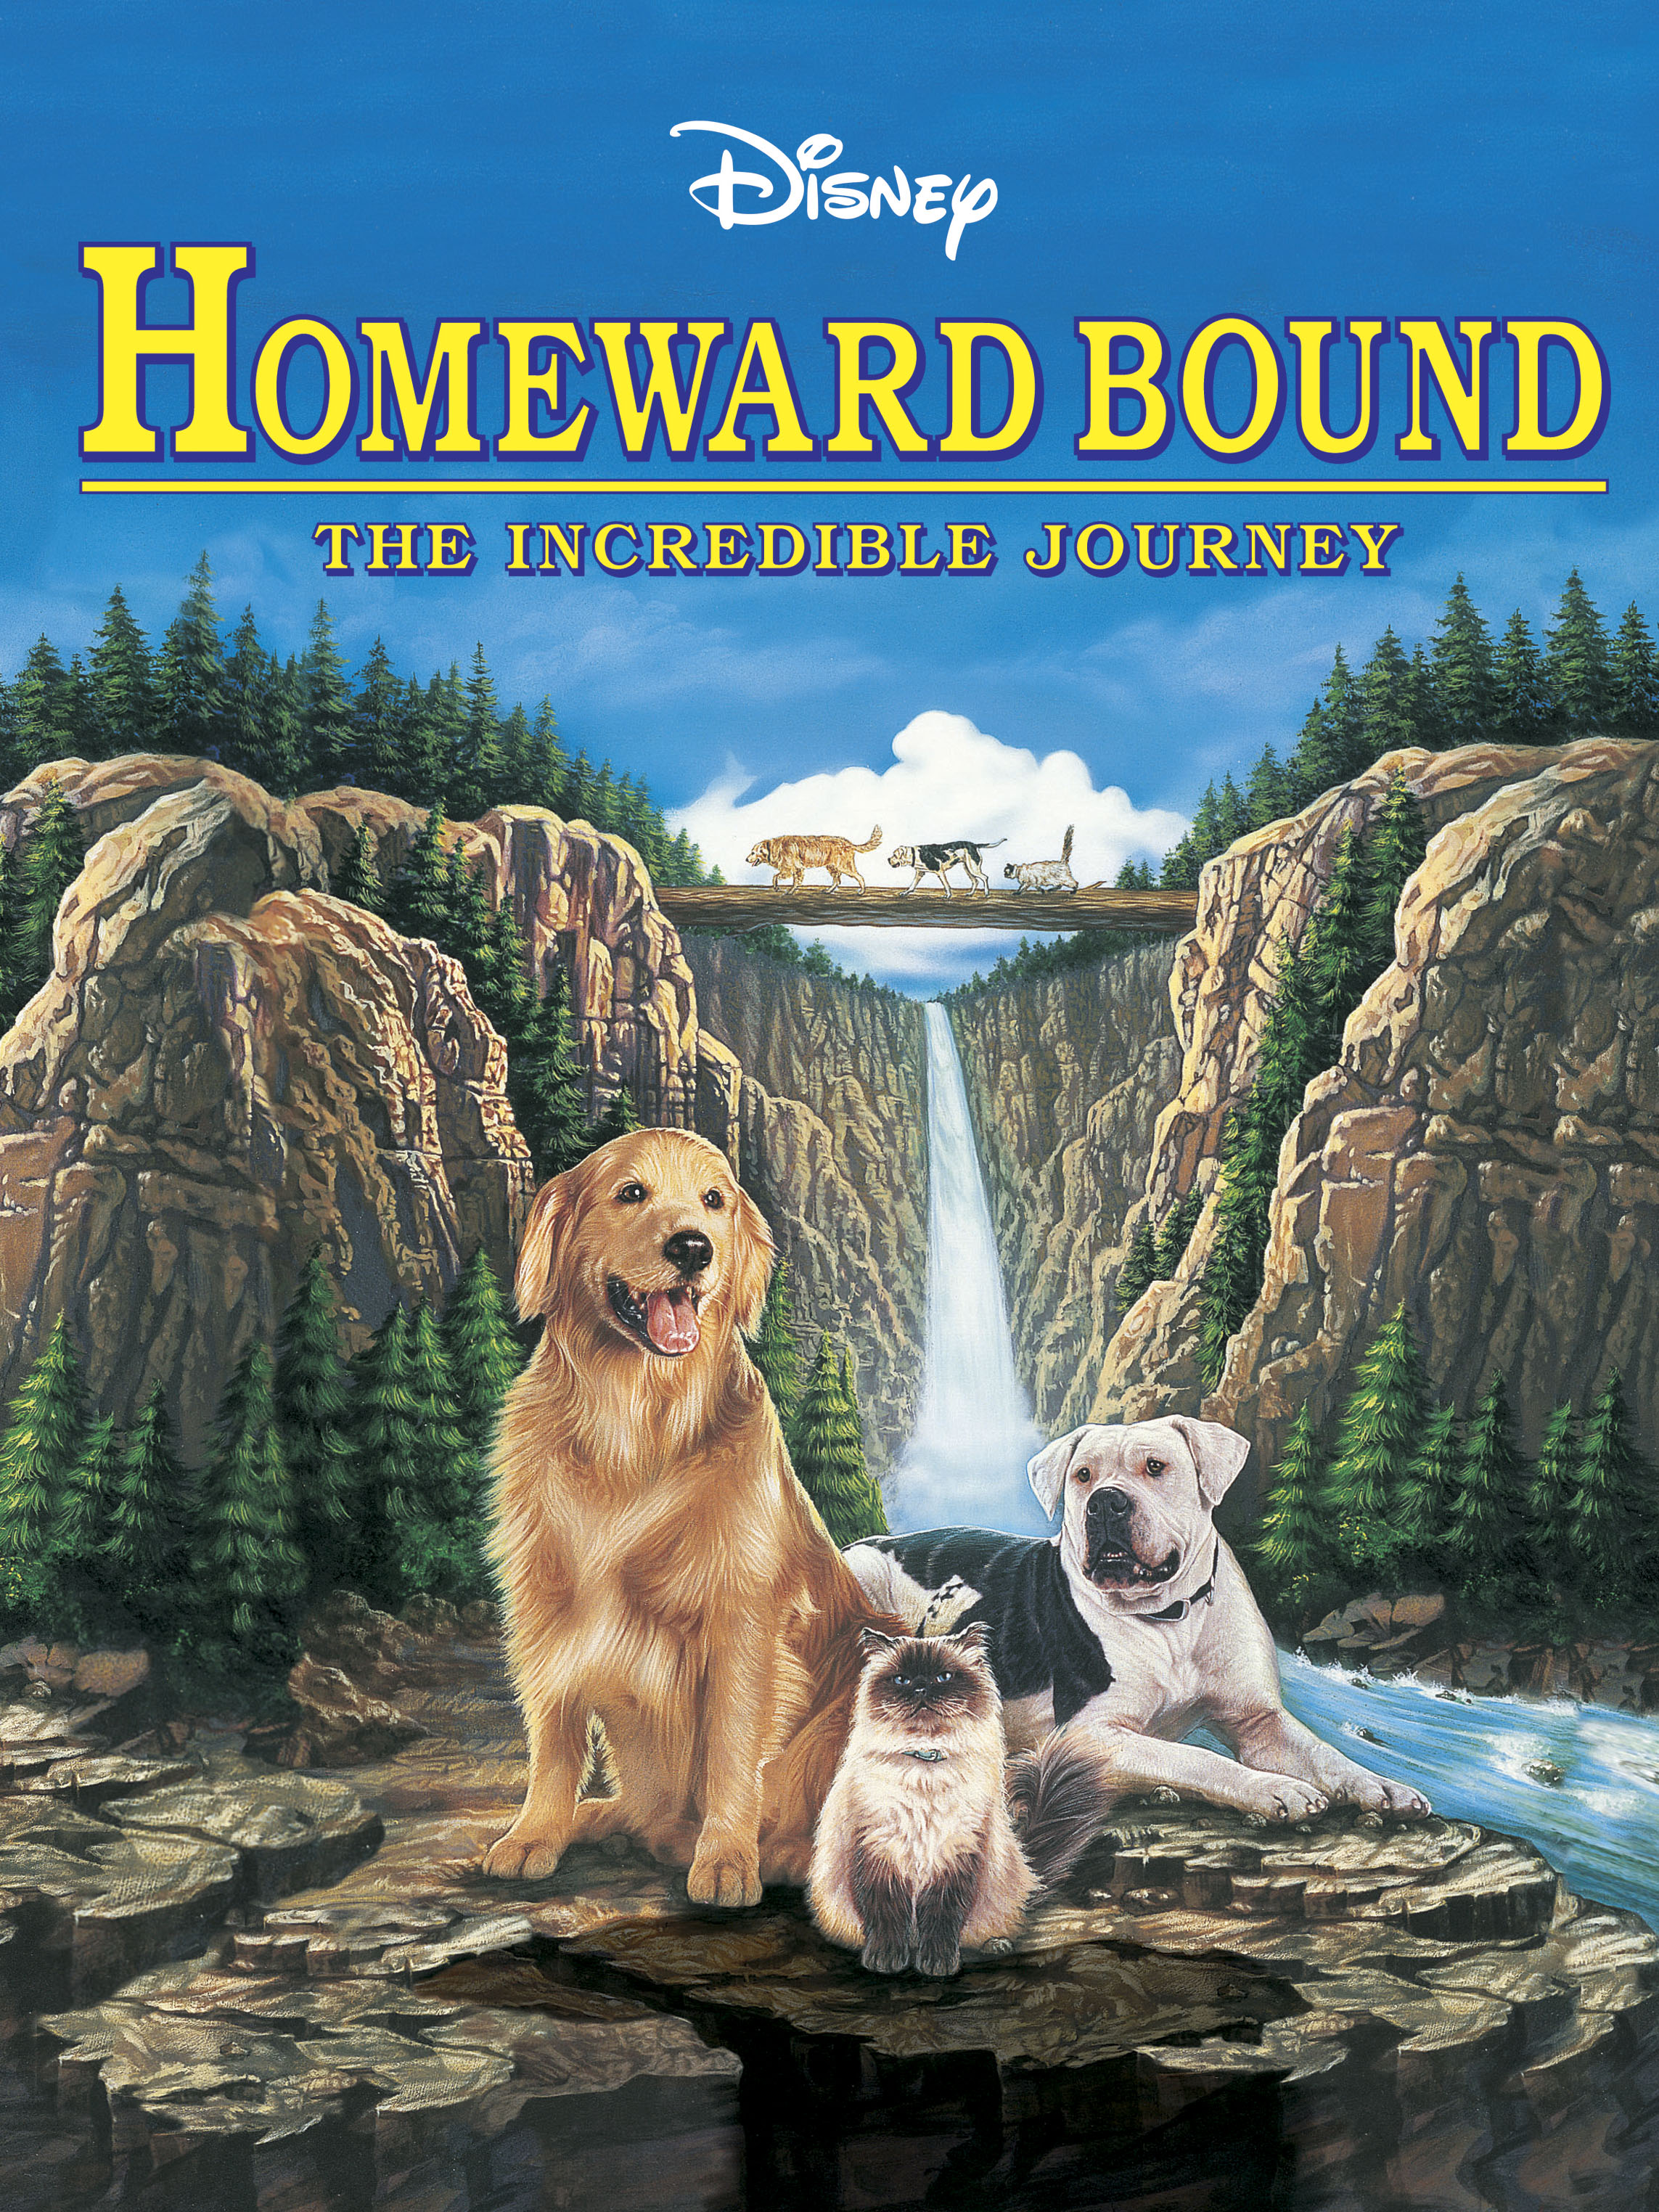 homeward bound movie review